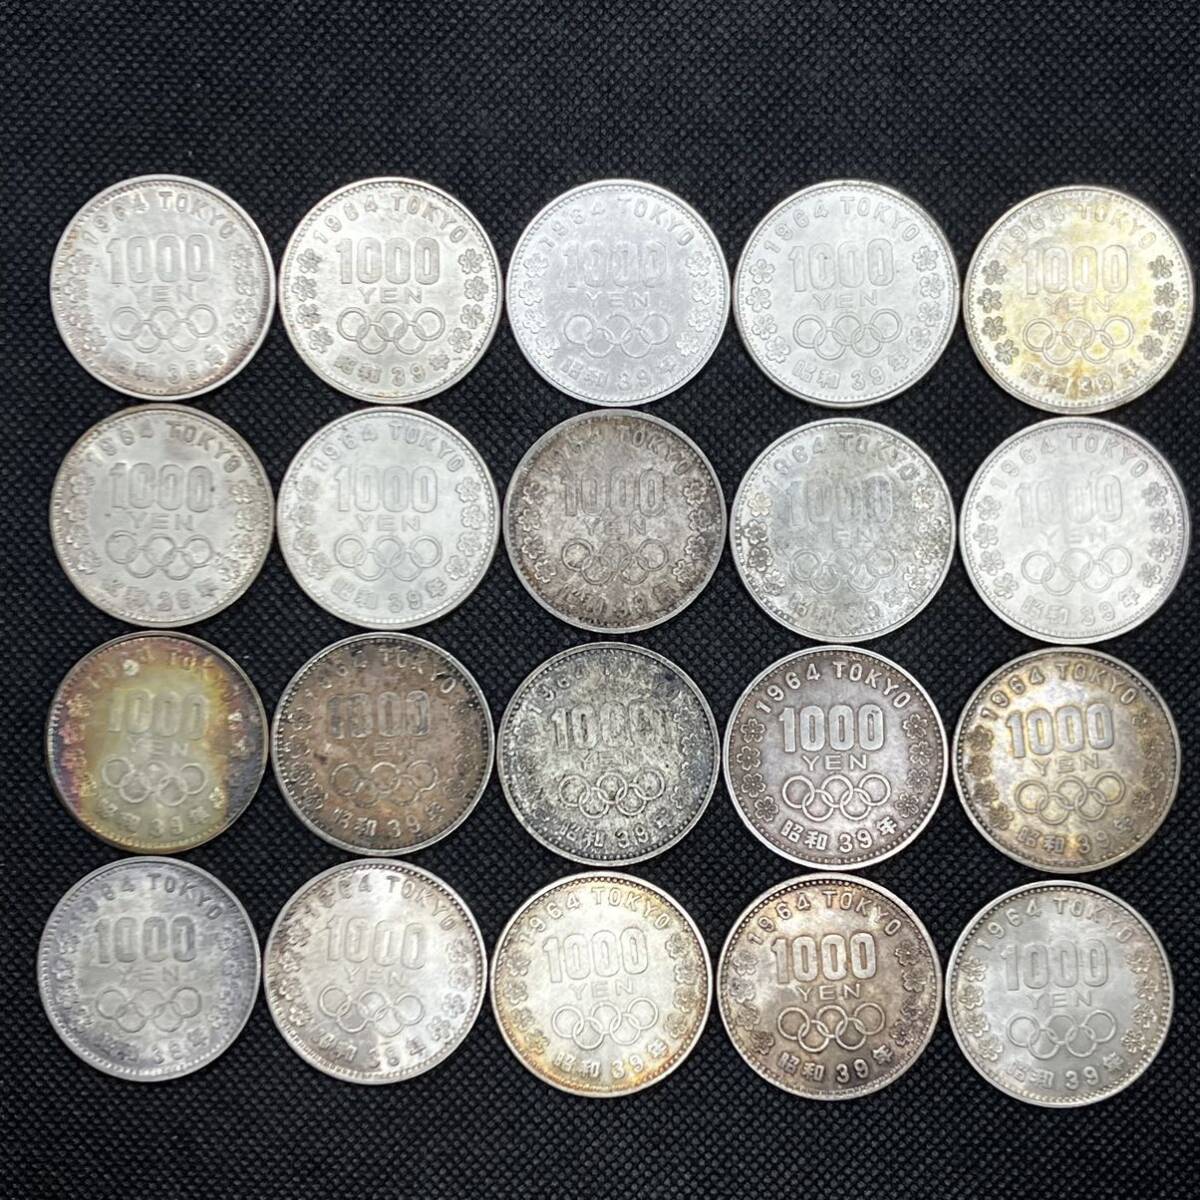 東京オリンピック1000円銀貨 20枚 東京オリンピック 1964年 昭和39年 記念硬貨 の画像1